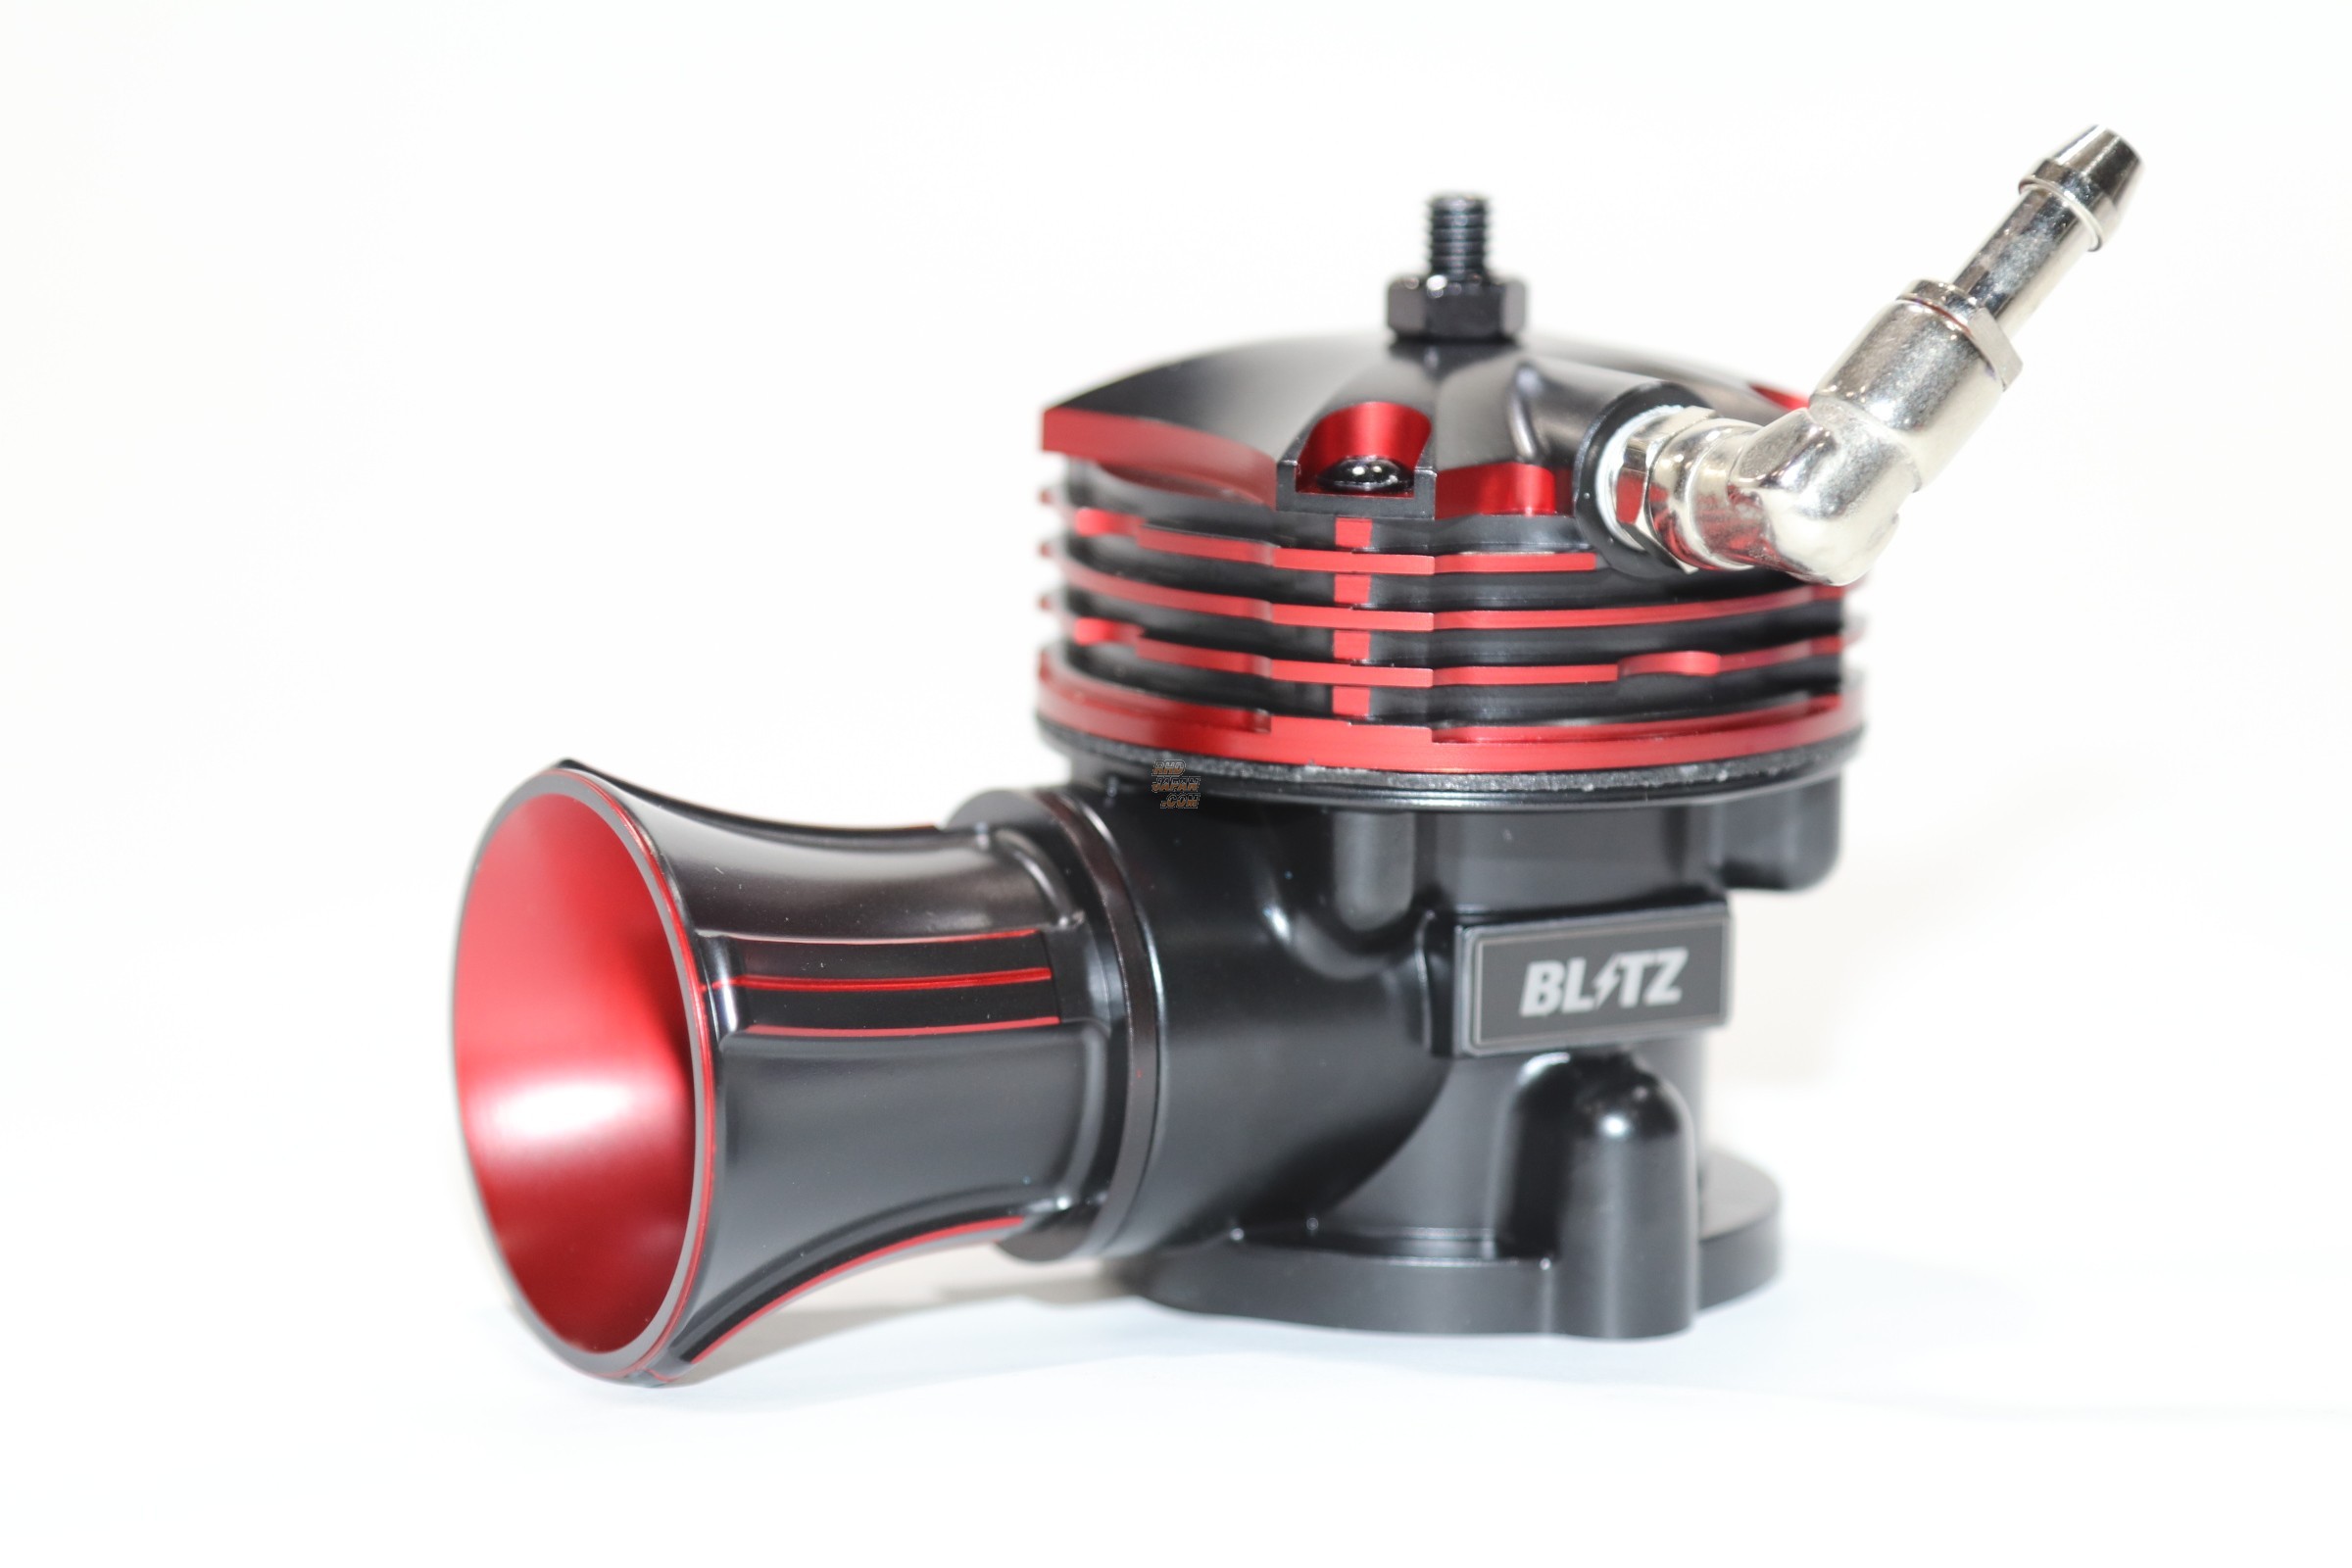 BLITZ(ブリッツ) SUPER SOUND BLOW OFF VALVE BR リリースタイプ(大気開放型) インプレッサ・WRX STI・フォレ - 1